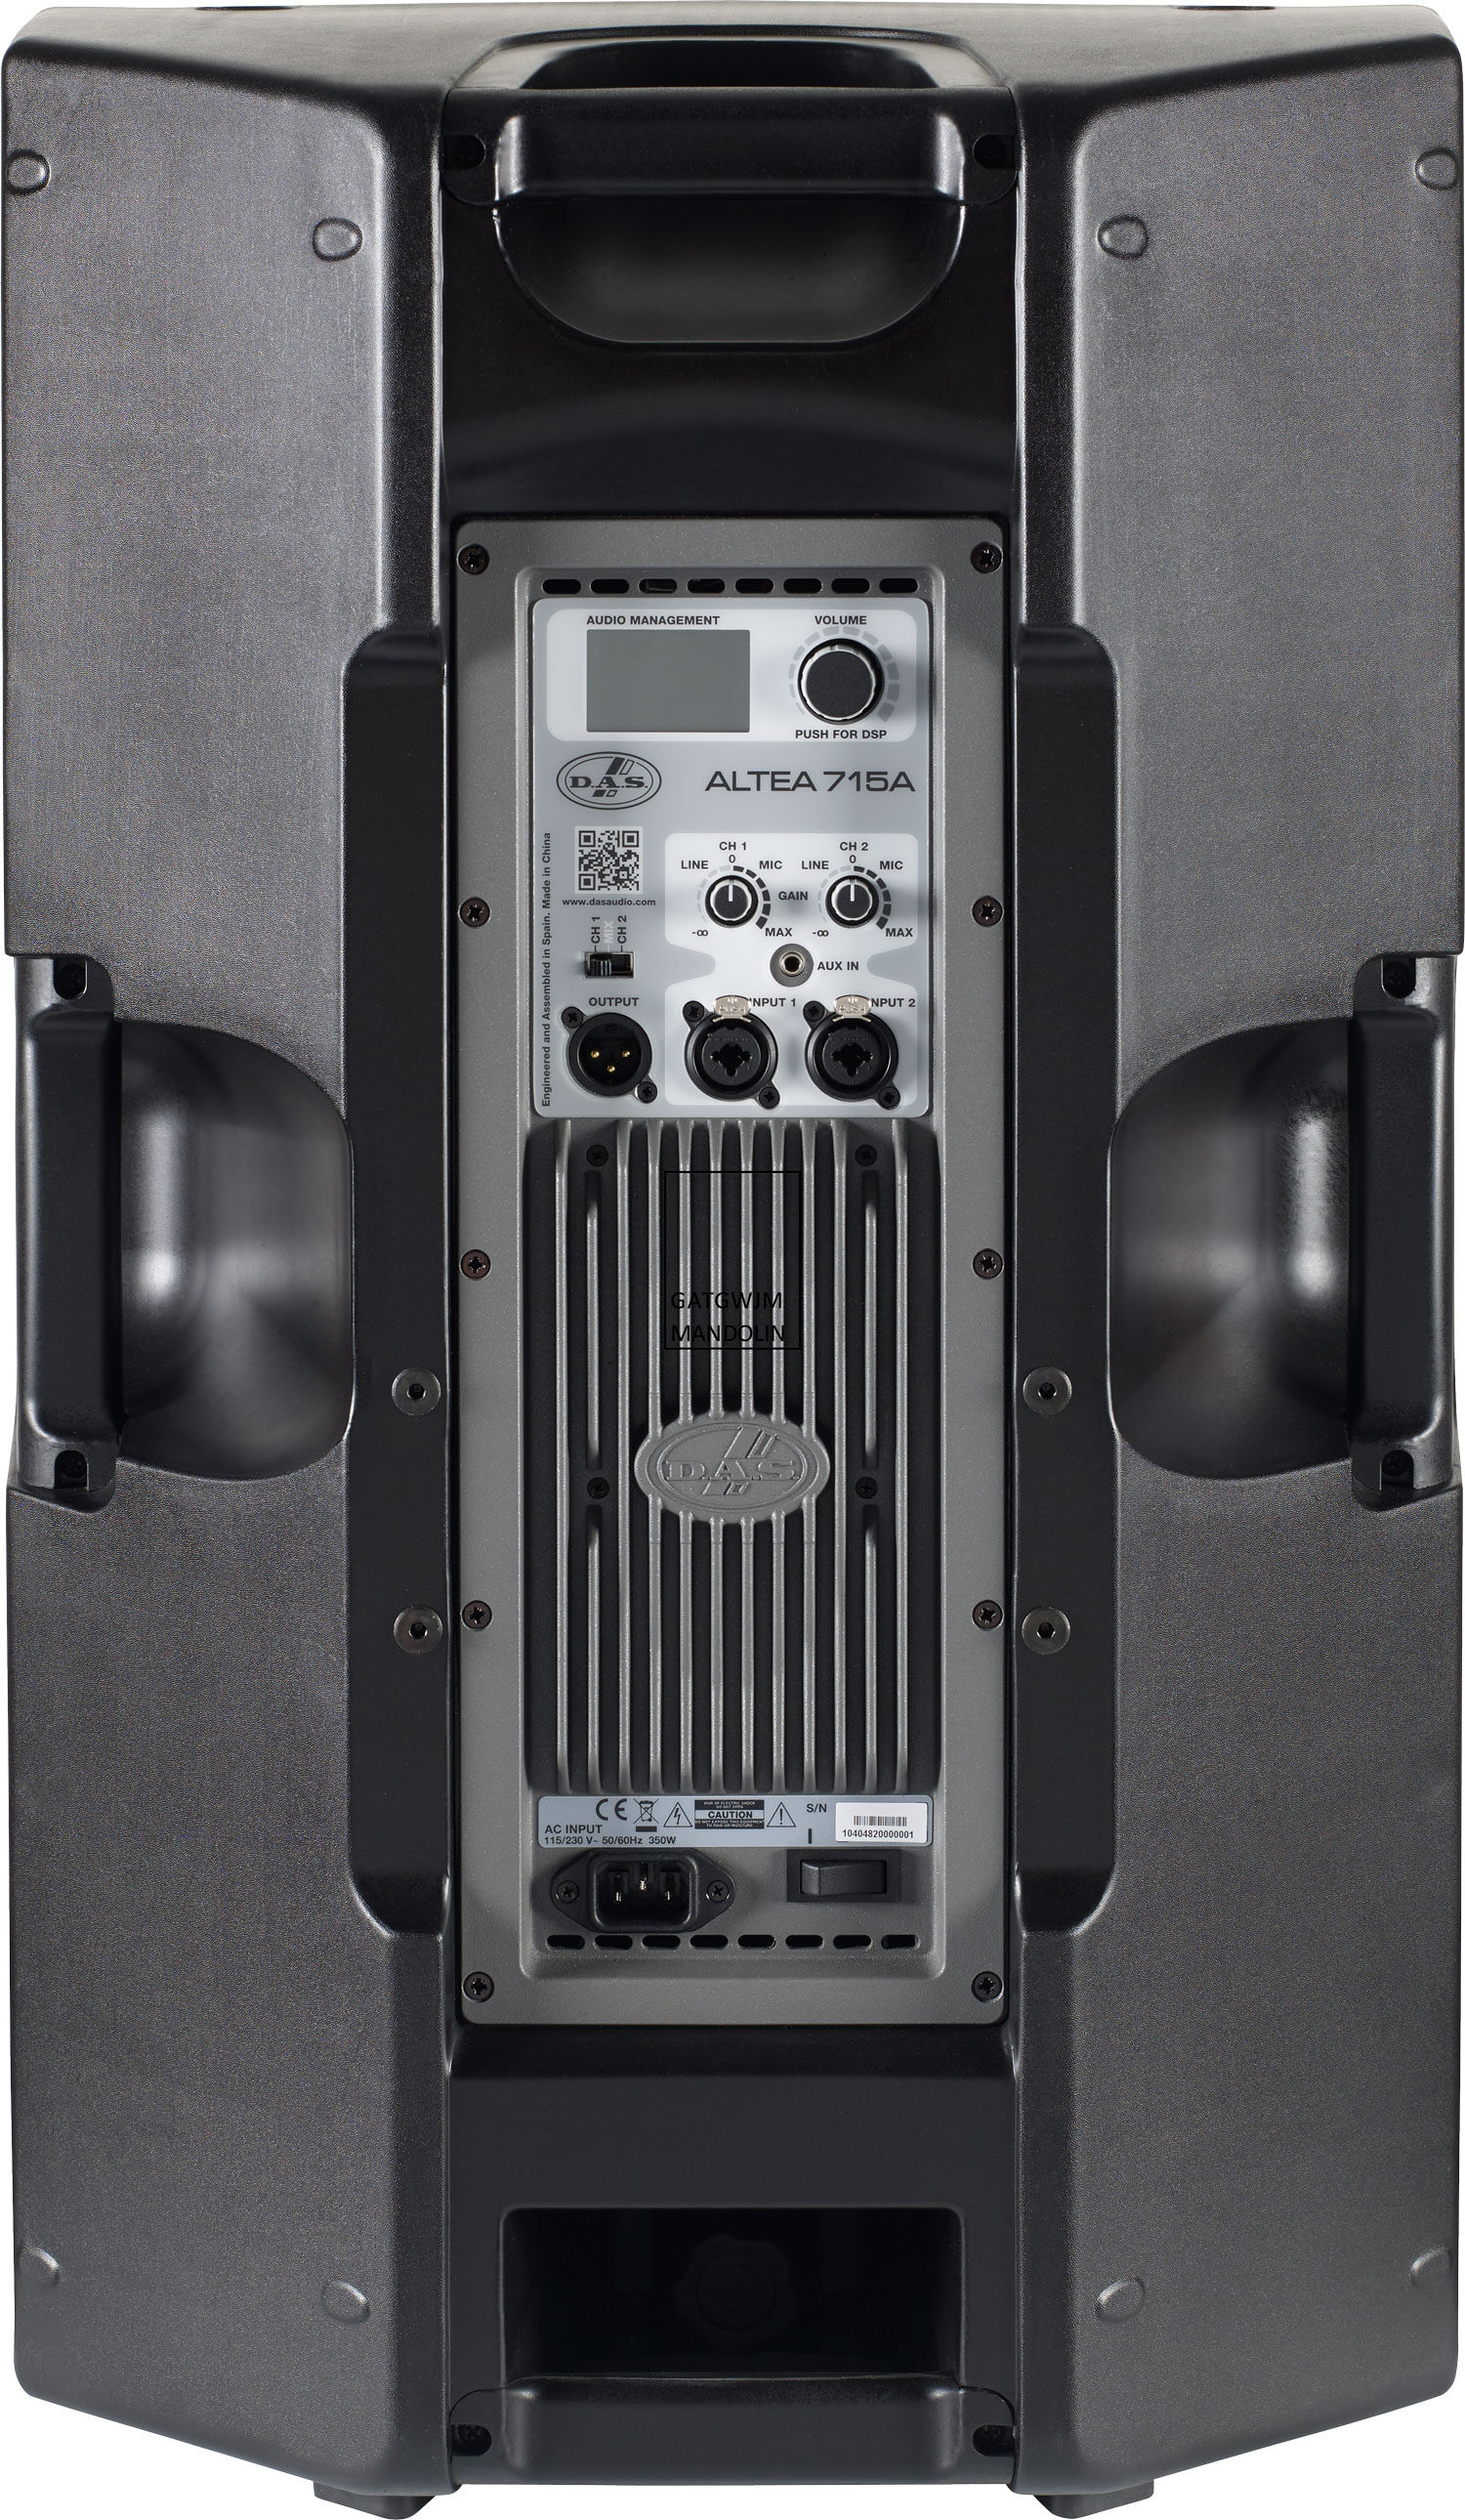 Audio de D.A.S Altea 715 Sistema de altavoces pasivos de 2 vías (2000W)